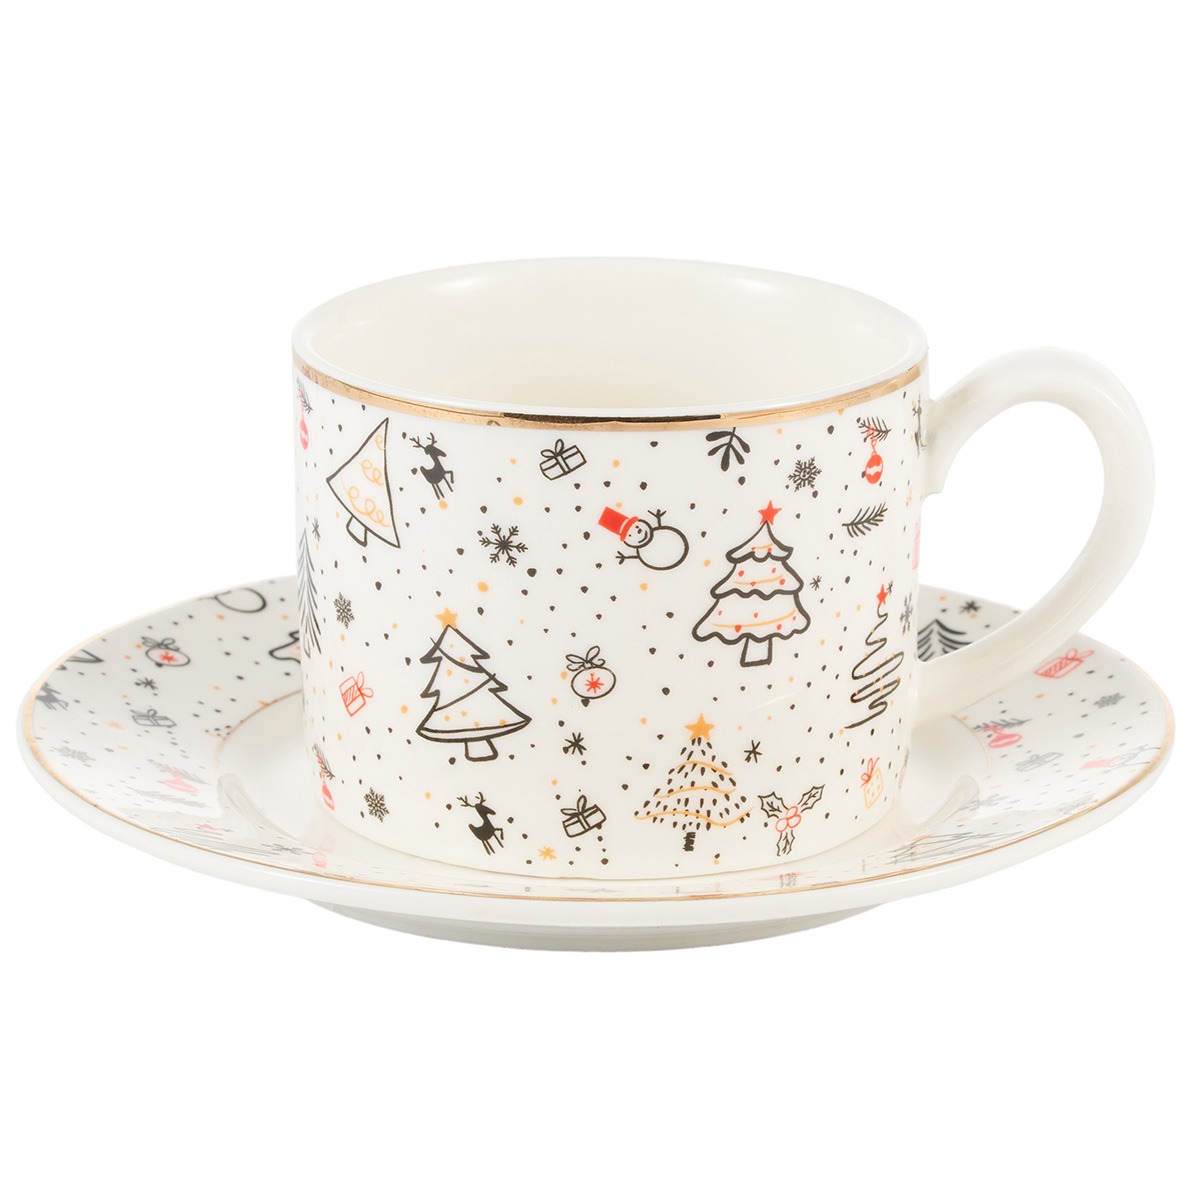 Чайная пара Gipfel Christmas фарфор белый чашка 250 мл, блюдце 14 см пара чайная gipfel blanche чашка и блюдце